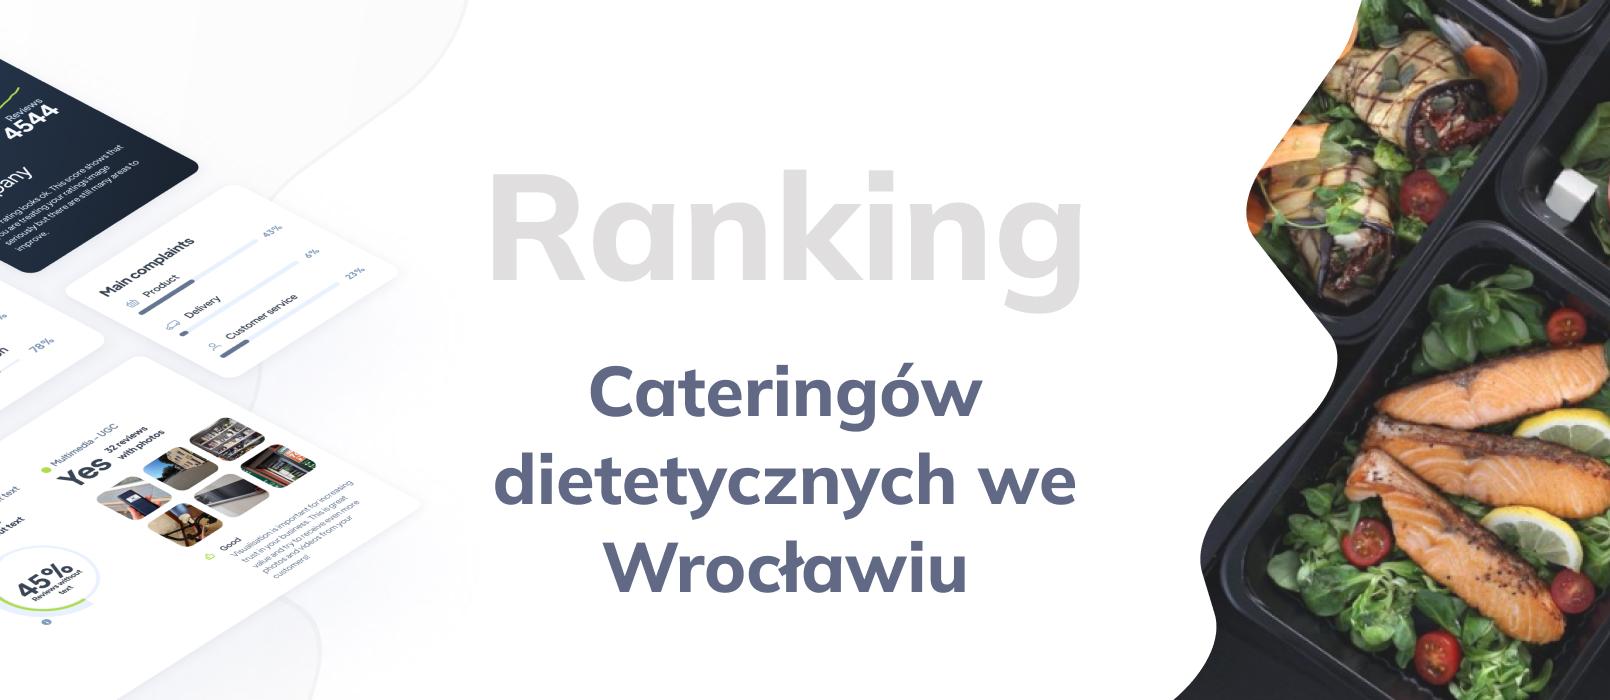 Cateringi dietetyczne we Wrocławiu - ranking TOP 10